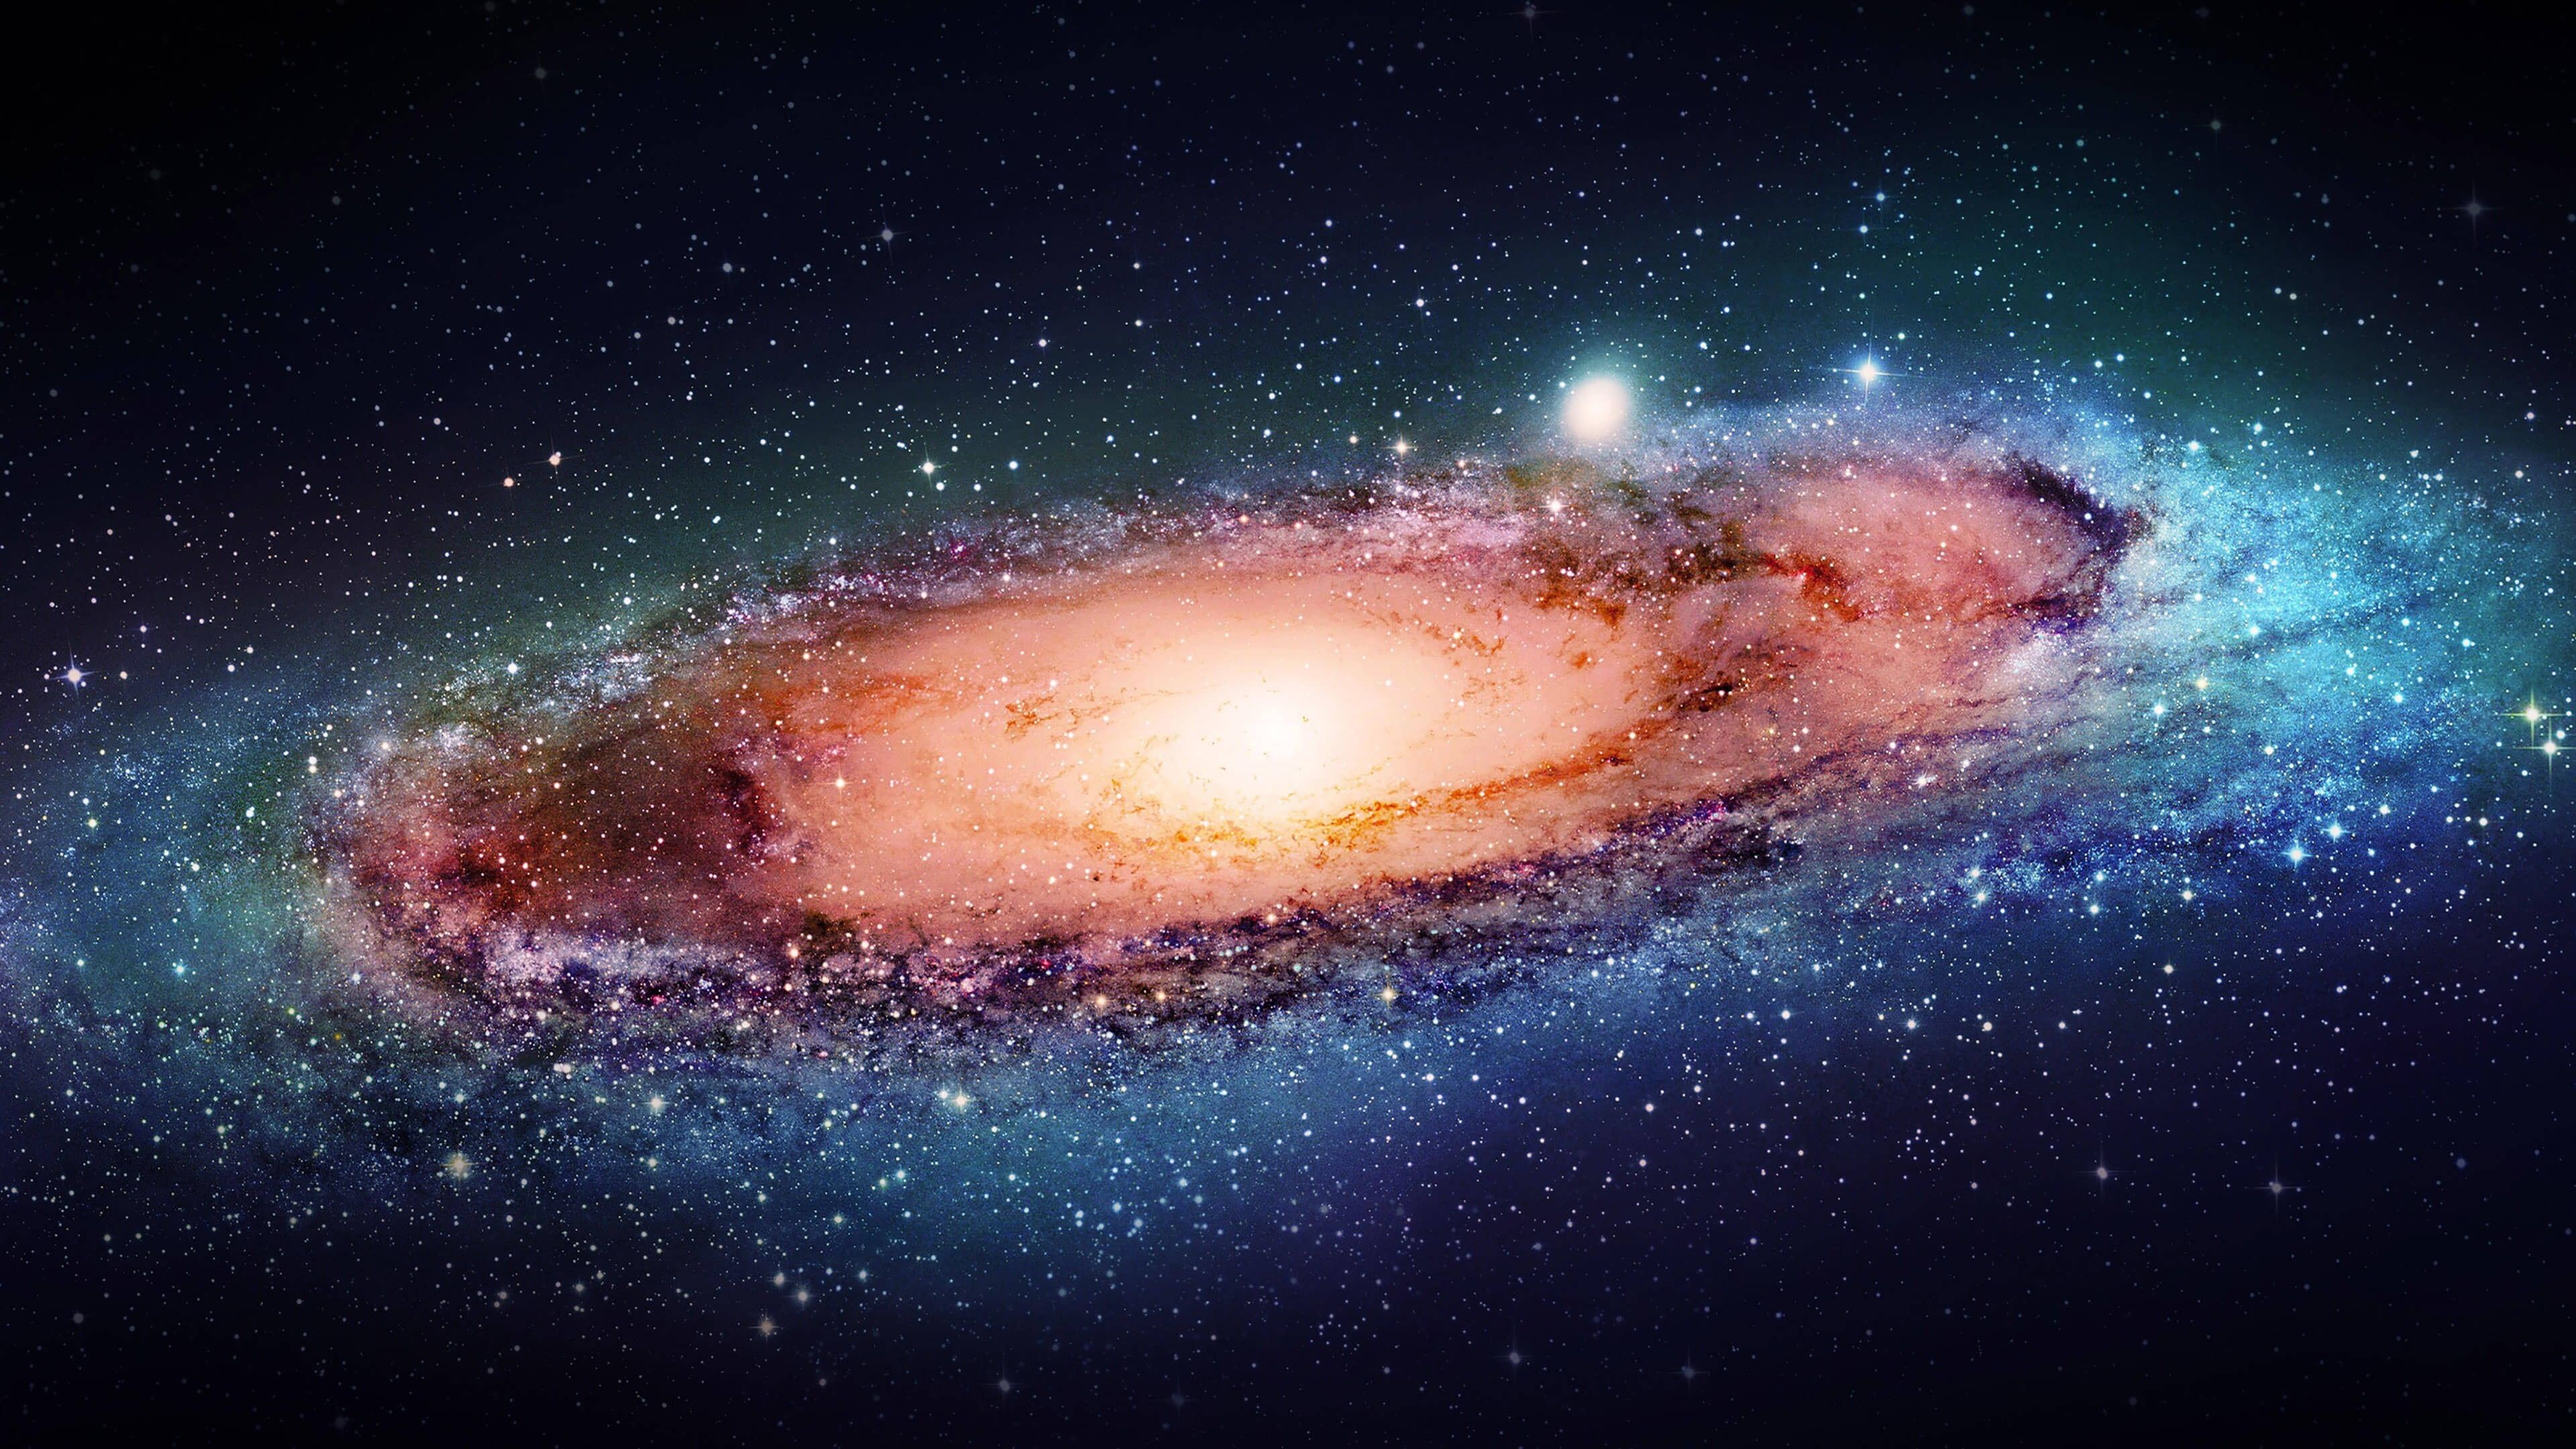 Đường Ngân Hà 4K sẽ đưa bạn vào một hành trình đầy mê hoặc và thú vị trong những thế giới bị lãng quên của vũ trụ. Với hình ảnh chuyển động đẹp mắt và chất lượng cao, bạn sẽ cảm nhận được đẹp tuyệt vời của thiên nhiên đang xung quanh bạn, với những ngôi sao trên trời soi sáng vô cùng lung linh!